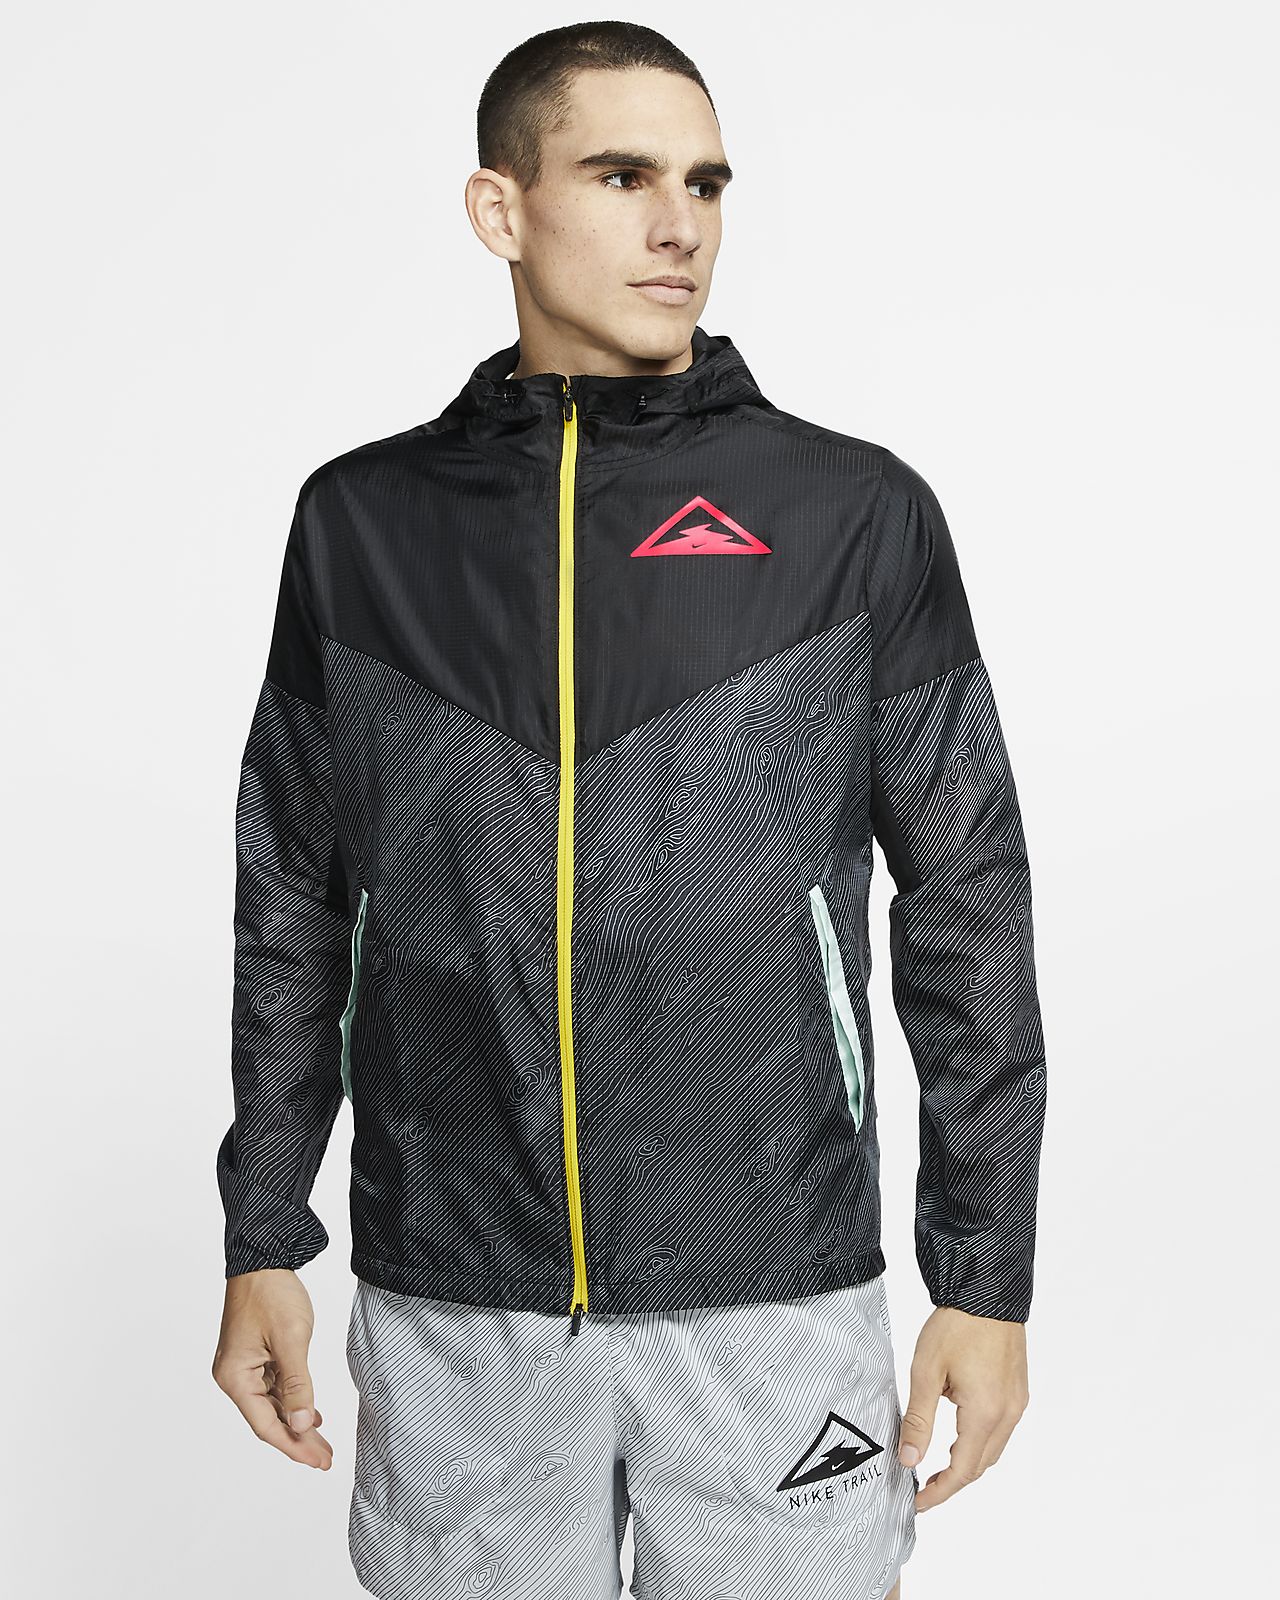 Download Nike Windrunner Men's Hooded Trail Running Jacket. Nike.com